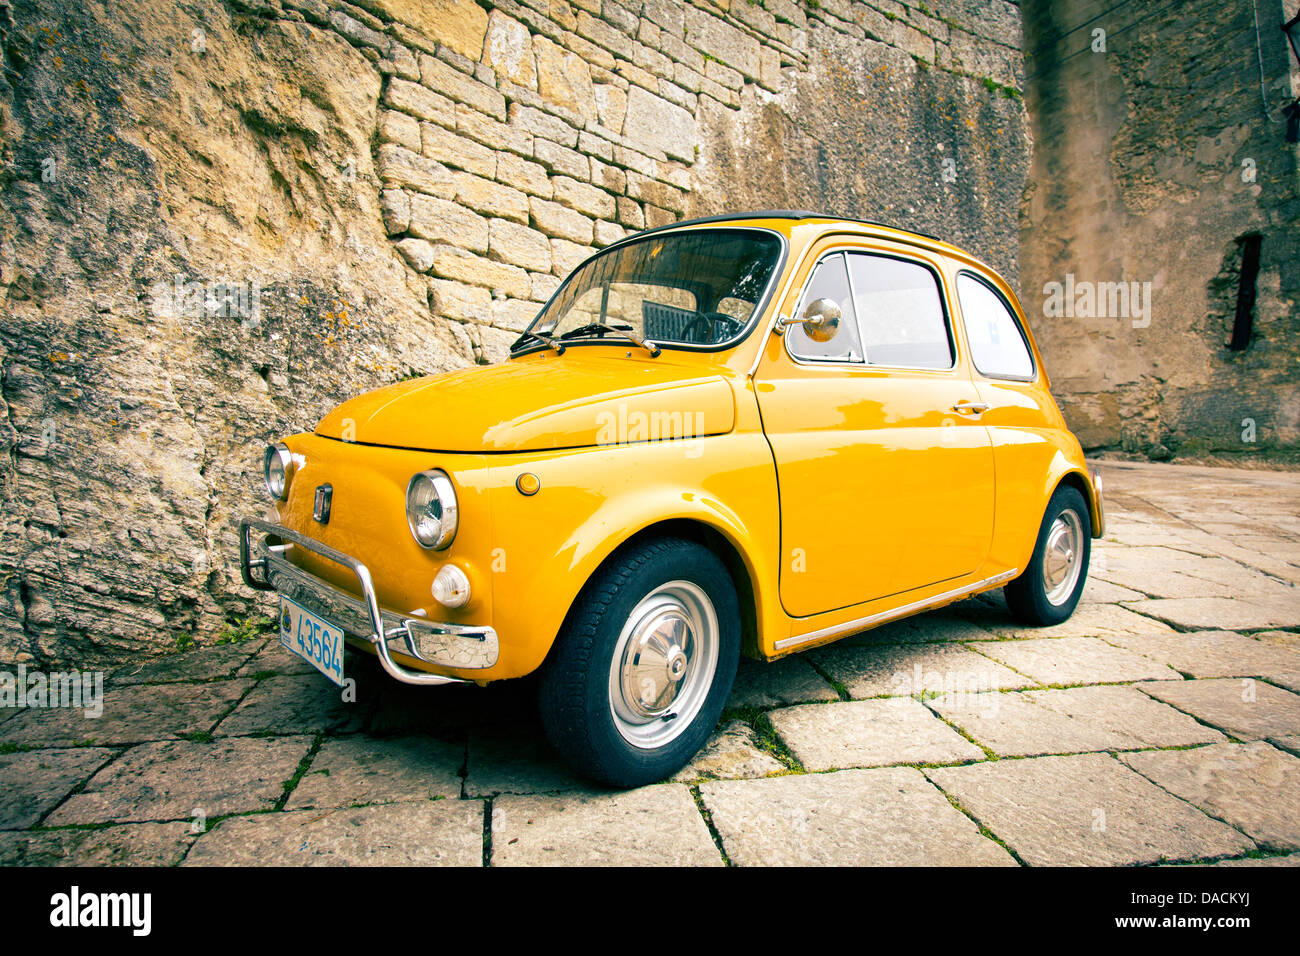 Retro- gelbes Auto stockbild. Bild von antike, weinlese - 43232027